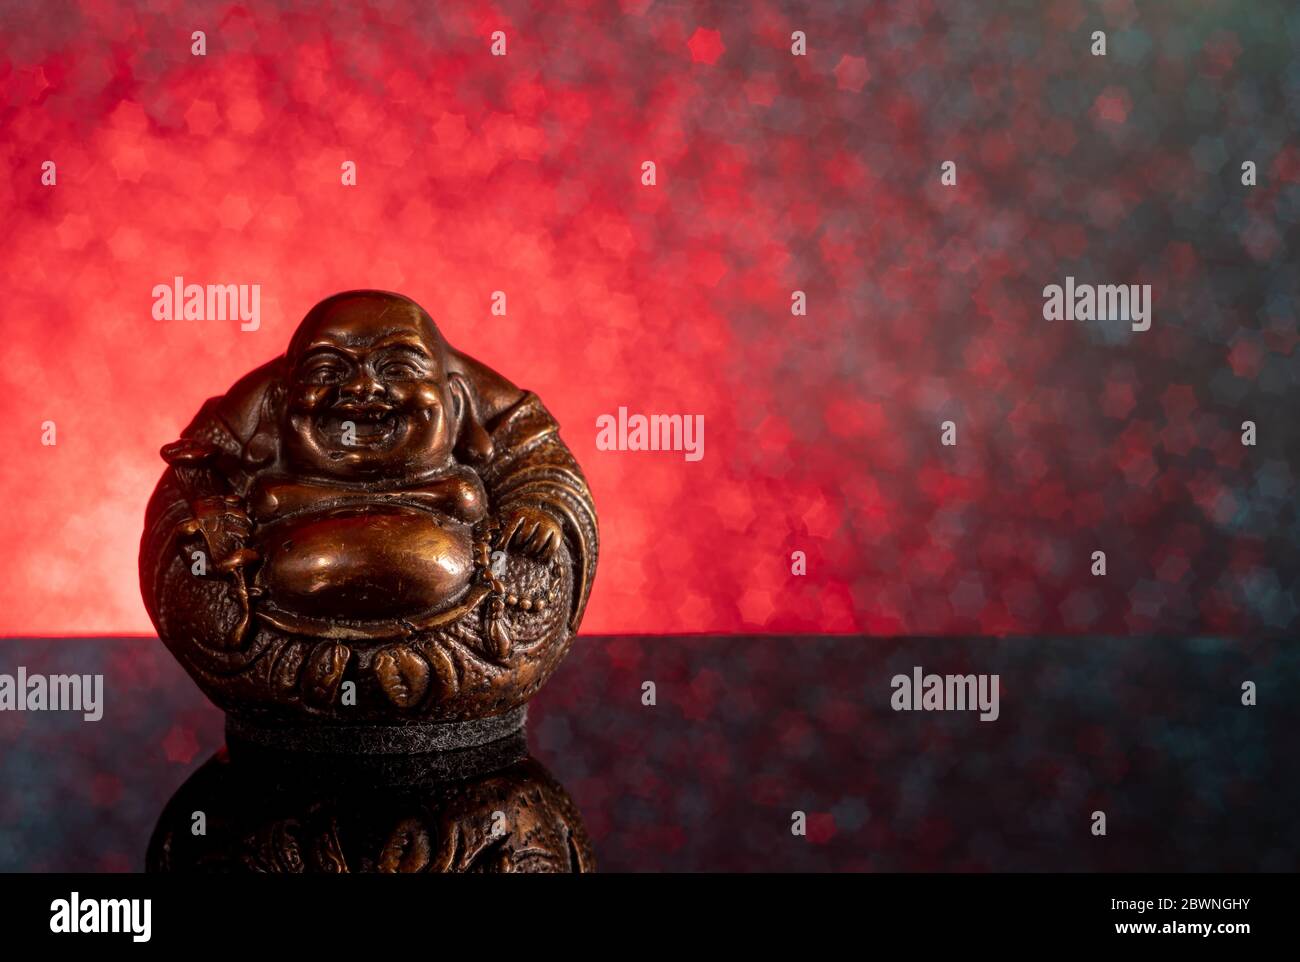 Chinesisch lachender buddha Hotei oder Budai auf einem rot-schwarzen Hintergrund mit Sternen und Spiegelung Stockfoto